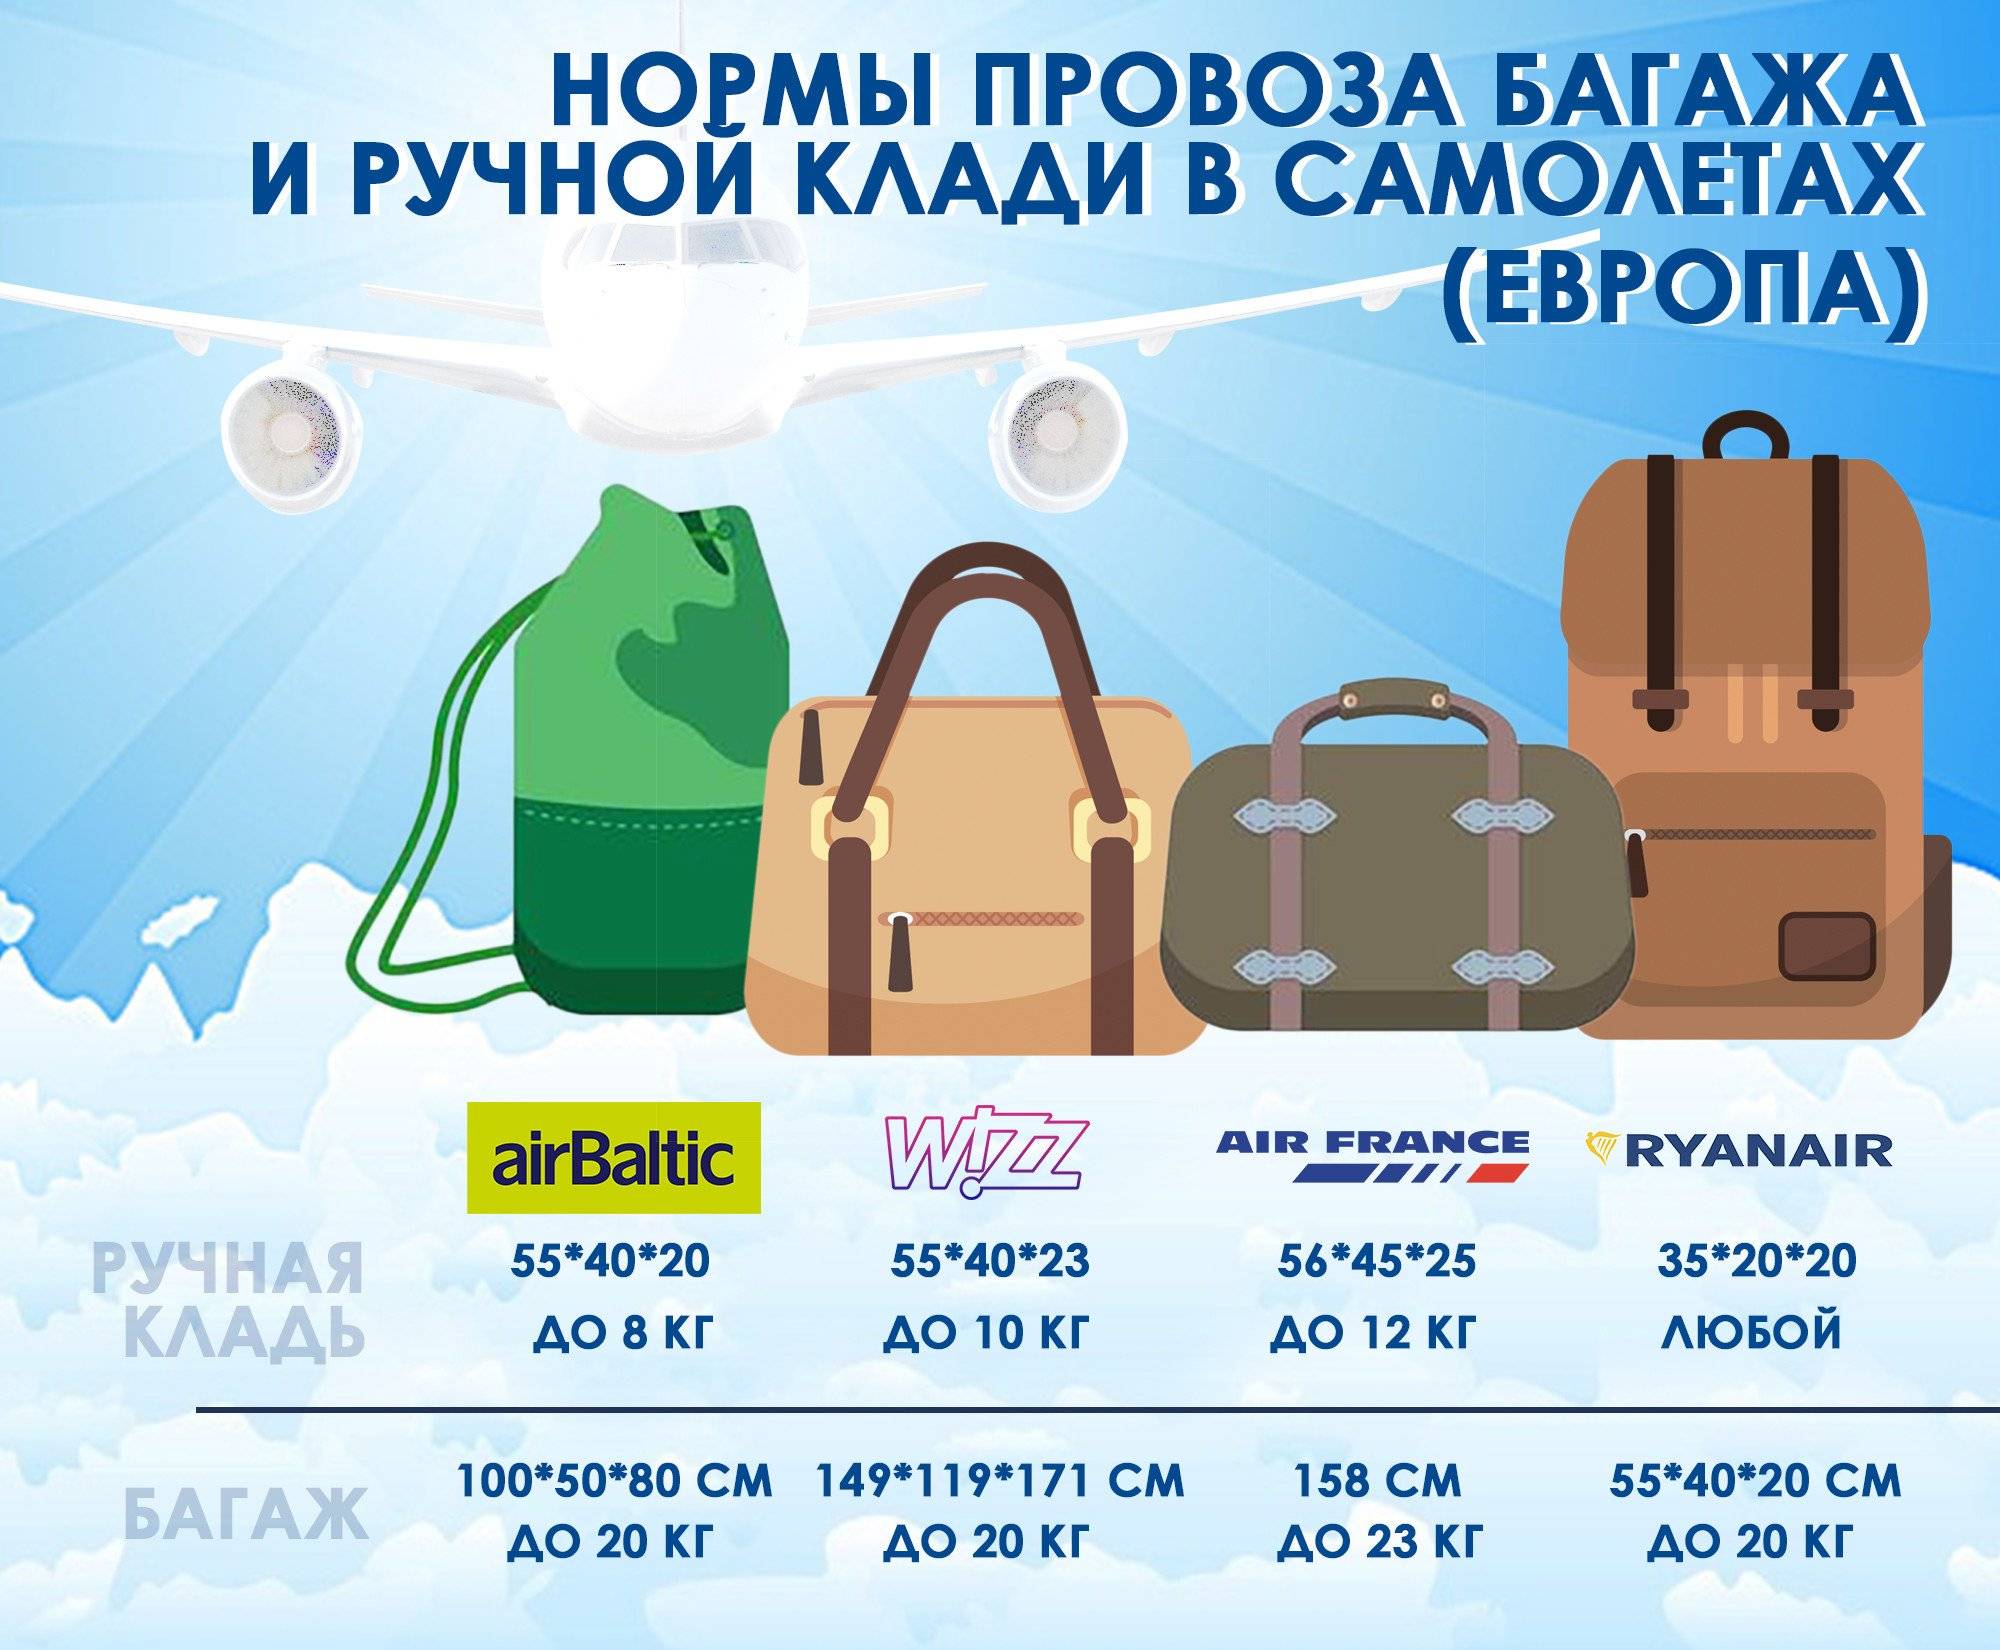 Правила провоза ручного багажа в самолете российских авиакомпаний